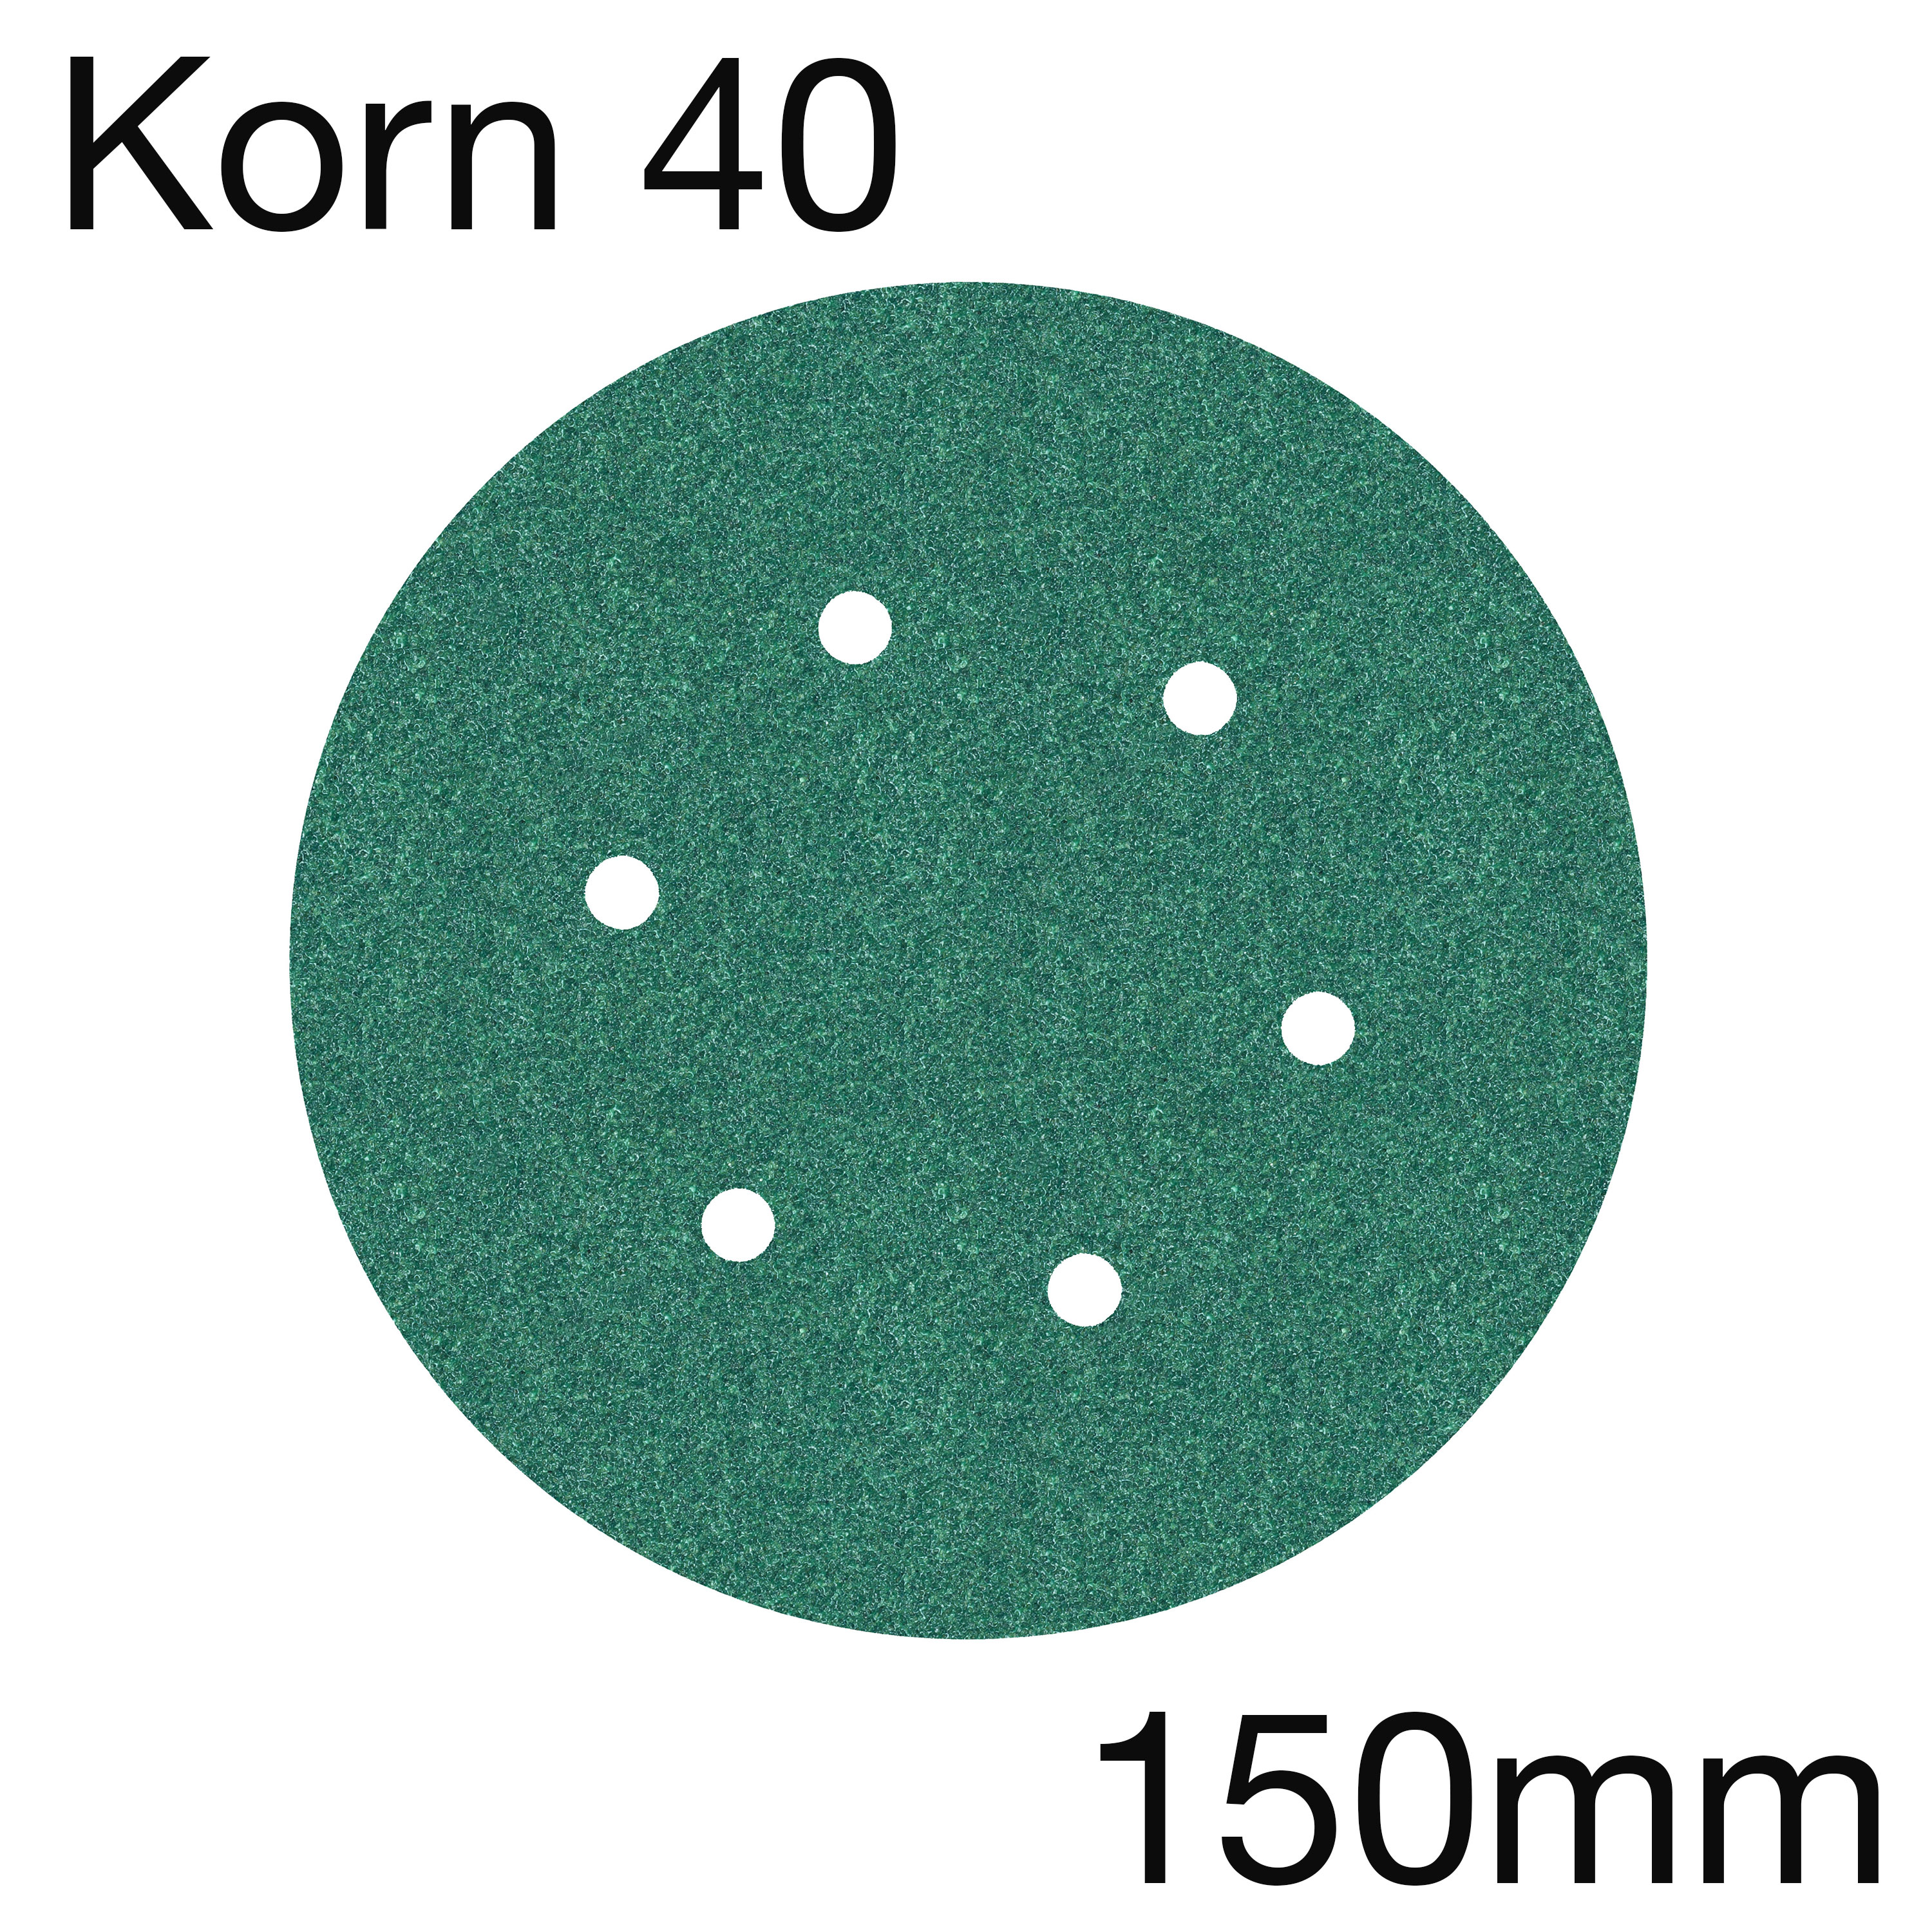 3M 245 01691 Hookit Papierschleifscheibe, 6-Loch, Korn 40, 150mm, Pack mit 100 Stk